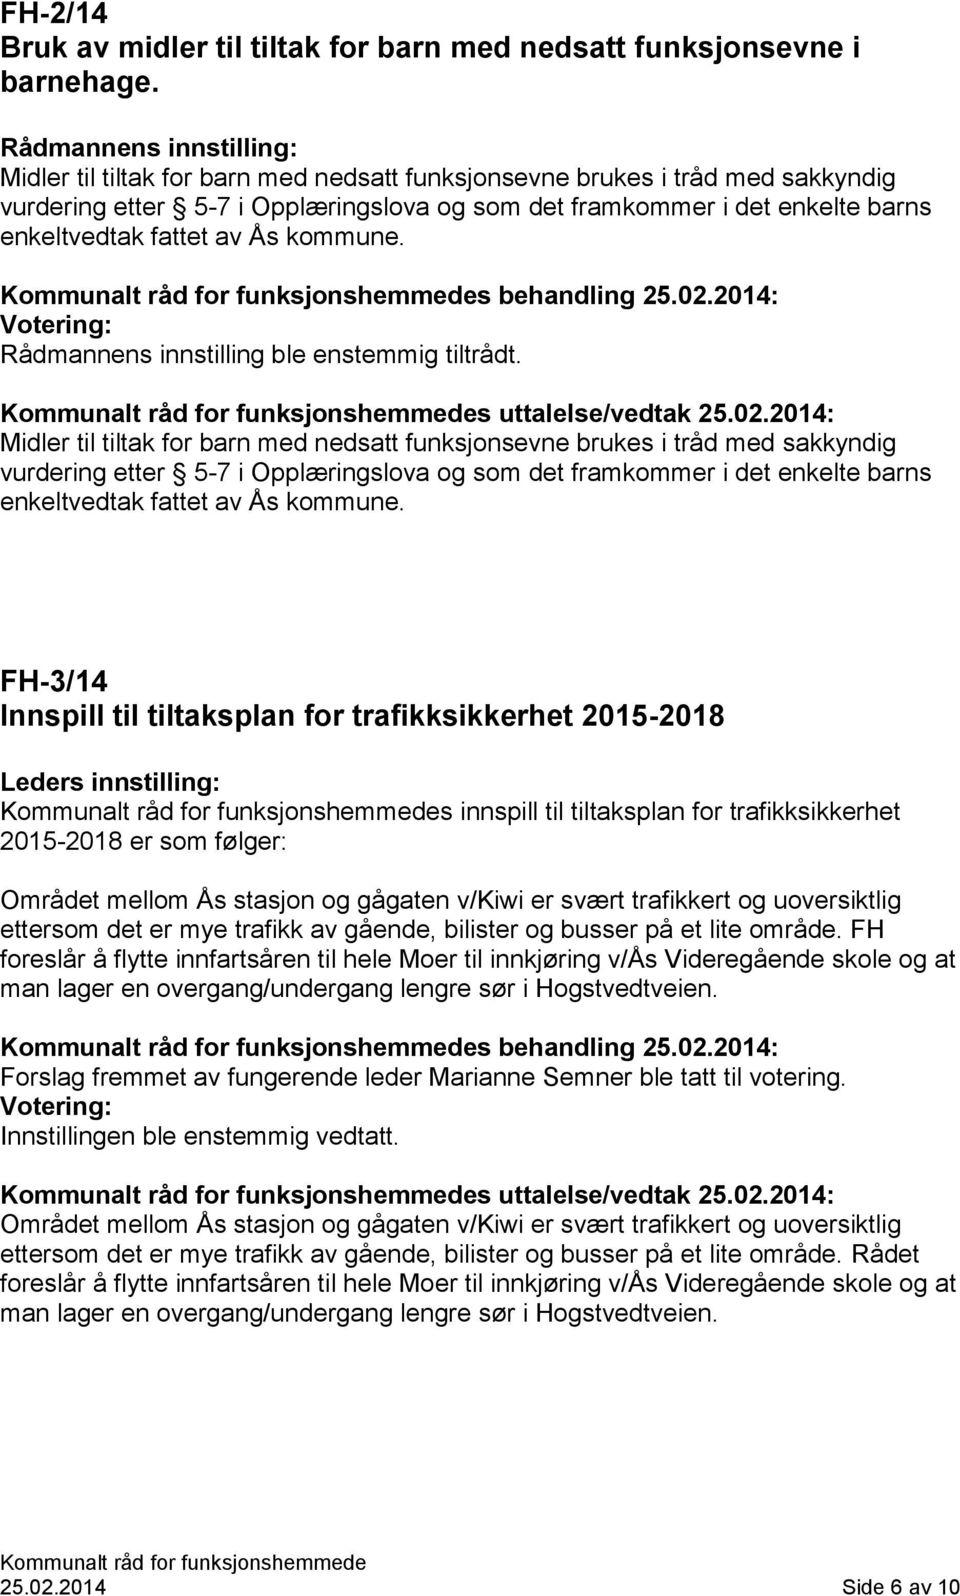 fattet av Ås kommune. s behandling 25.02.